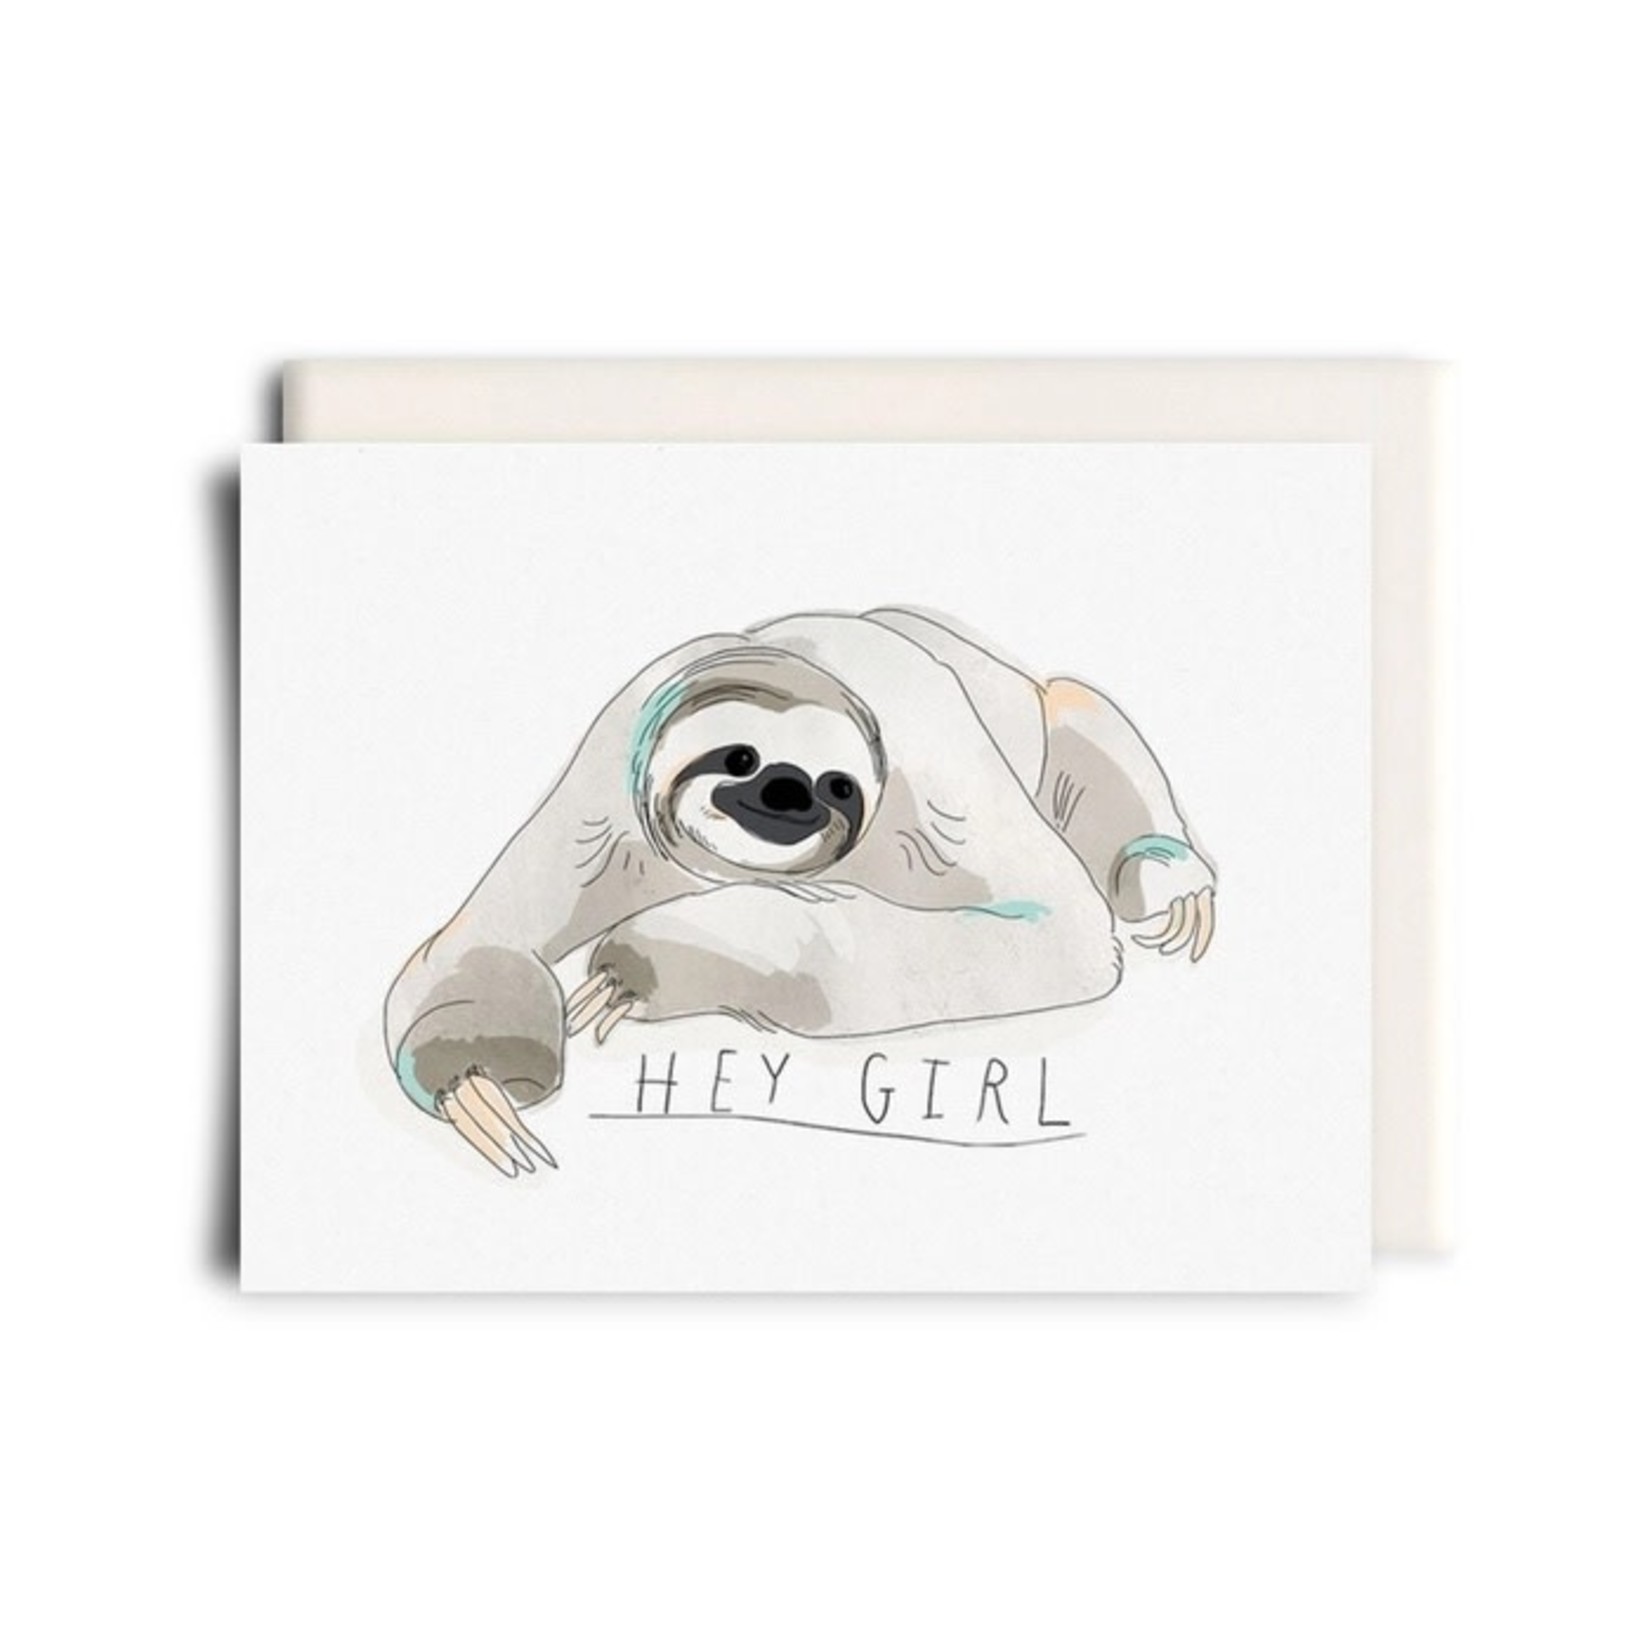 Hey Girl - Love Greeting Card